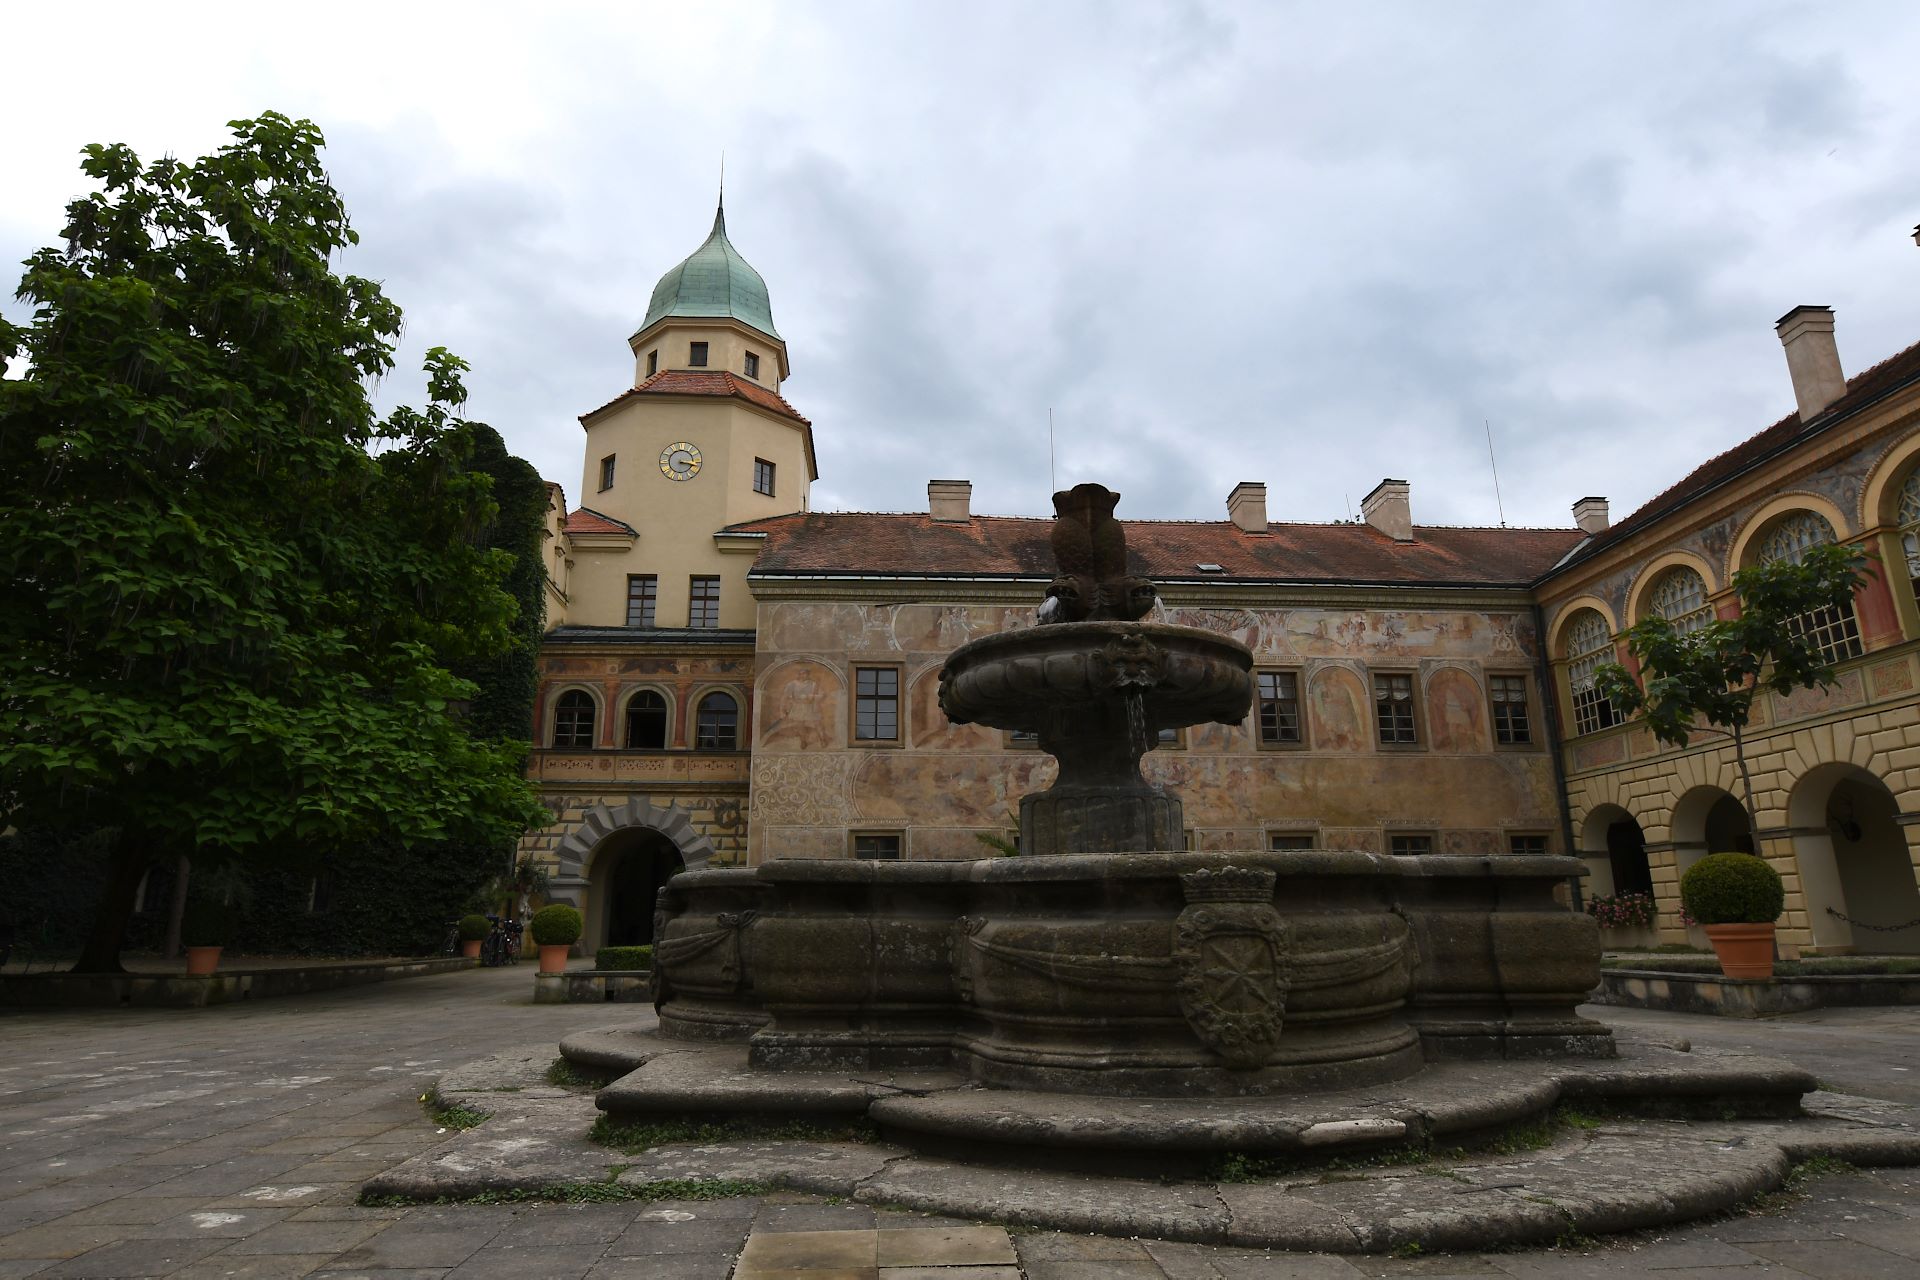 Schloss Častolovice